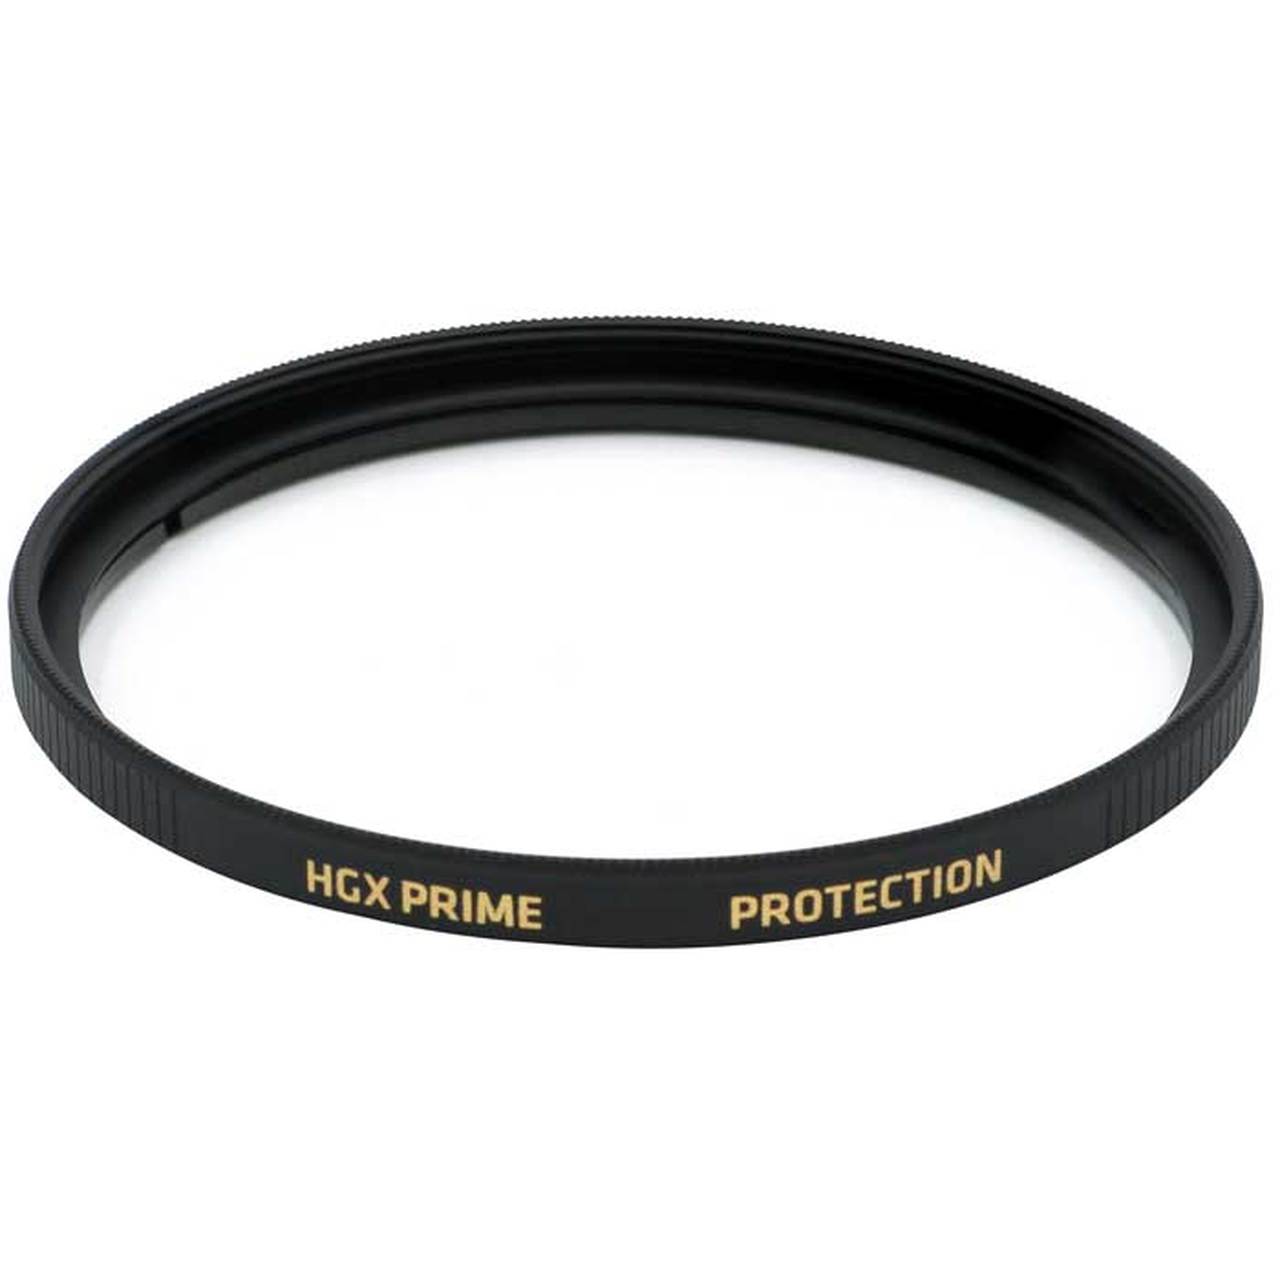 Promaster 6725 67mm UV HGX Prime Filter